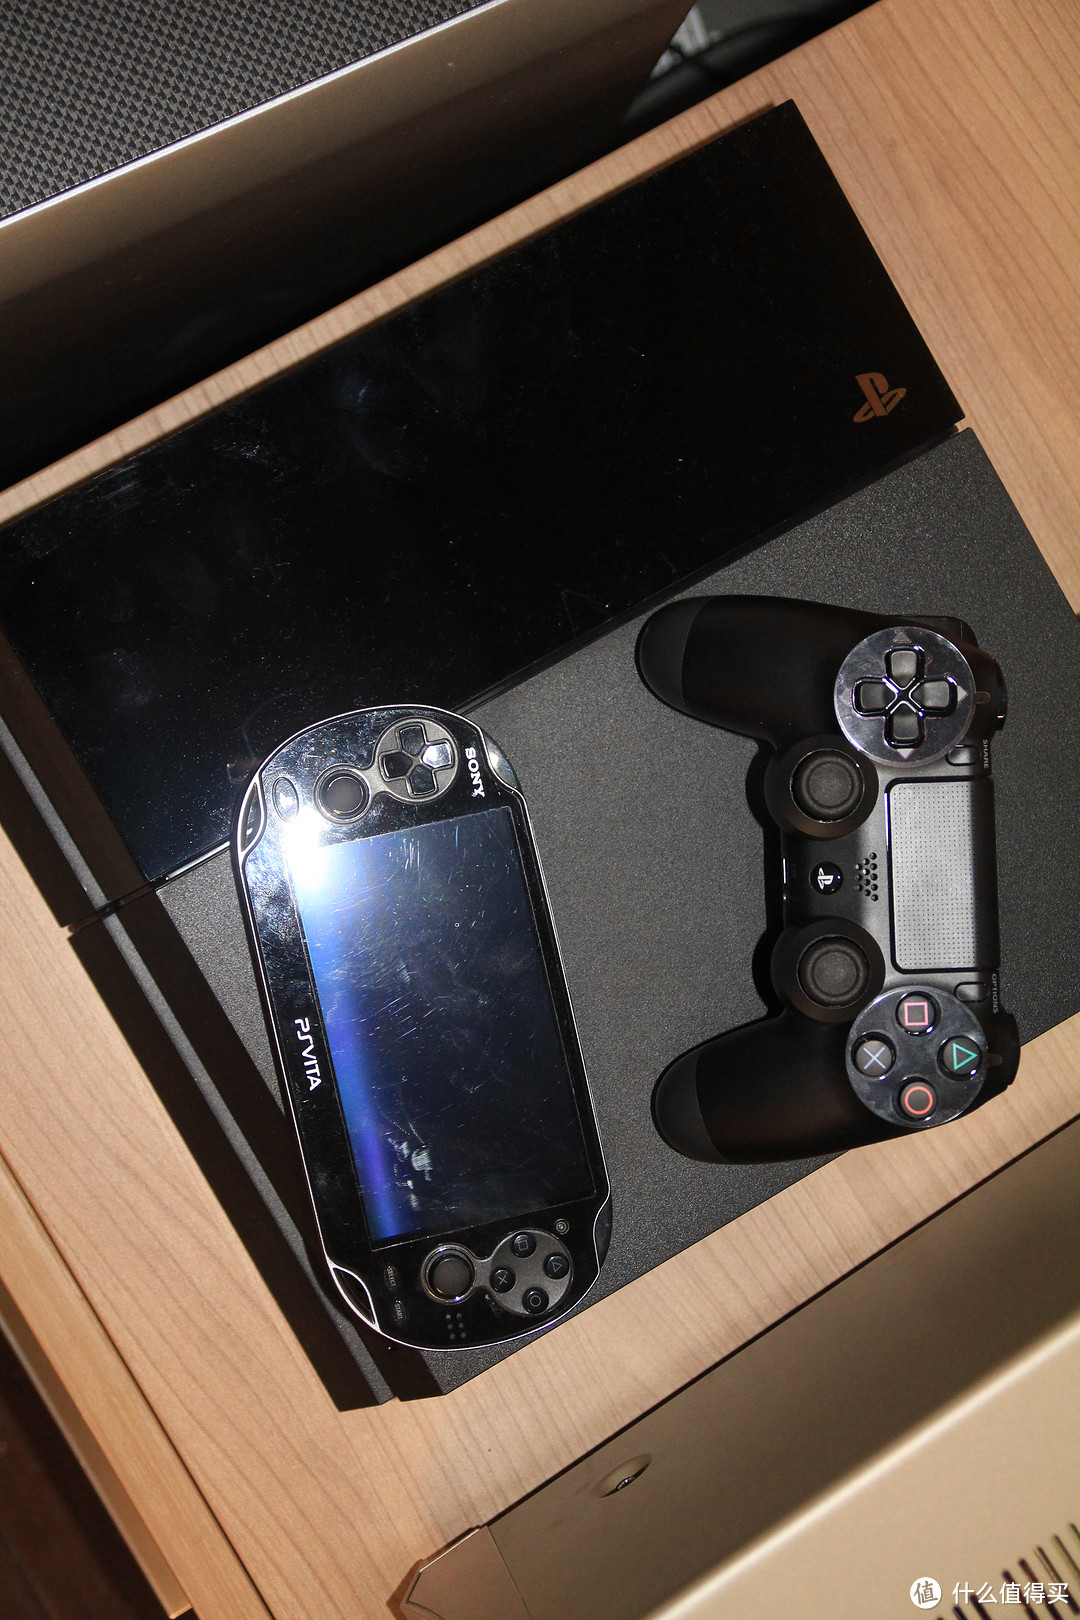 去年首发入的美版PSV，虽然大作不多但做为PS4的第二手柄和屏幕将来的作用还是挺大的。PS4的游戏还没入系统也没有升级（现在1.5没胆子升问题多多），等游戏来了后再晒一次准备用投影来屏摄。